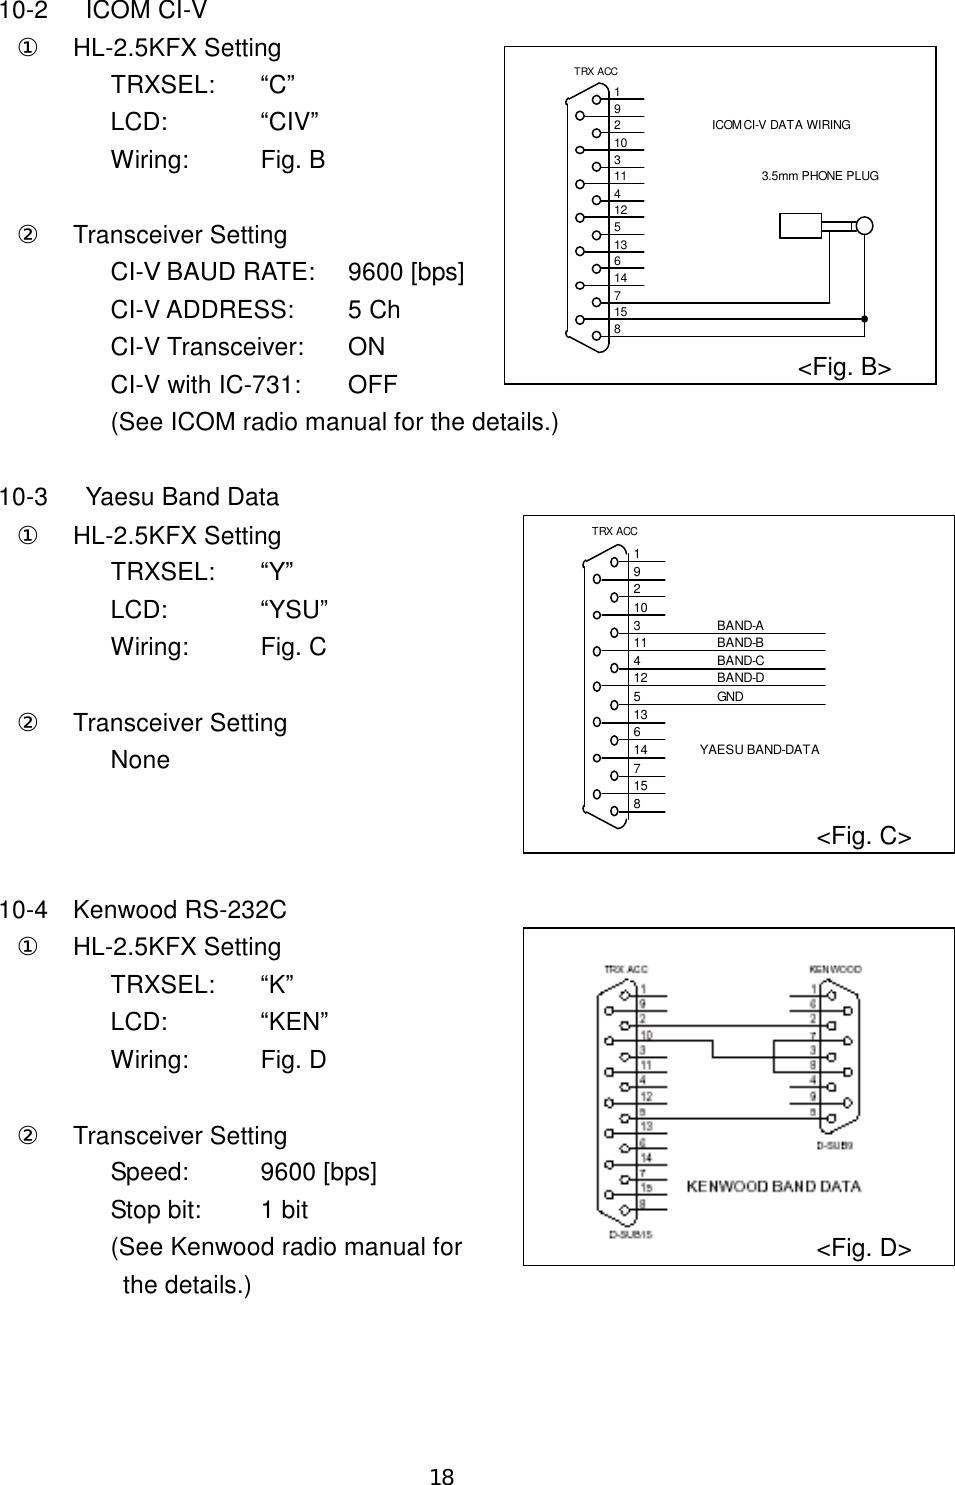 18 10-2  ICOM CI-V ①  HL-2.5KFX Setting TRXSEL:  “C” LCD:    “CIV” Wiring:  Fig. B  ②  Transceiver Setting CI-V BAUD RATE:  9600 [bps] CI-V ADDRESS:  5 Ch CI-V Transceiver:  ON CI-V with IC-731:  OFF (See ICOM radio manual for the details.)  10-3  Yaesu Band Data ① HL-2.5KFX Setting TRXSEL:  “Y” LCD:    “YSU” Wiring:  Fig. C  ②  Transceiver Setting None    10-4  Kenwood RS-232C ① HL-2.5KFX Setting TRXSEL:  “K” LCD:    “KEN” Wiring:  Fig. D  ②  Transceiver Setting Speed:  9600 [bps] Stop bit:  1 bit (See Kenwood radio manual for   the details.)  3.5mm PHONE PLUGICOM CI-V DATA WIRINGTRX ACC815714613512411310291&lt;Fig. B&gt; &lt;Fig. D&gt; BAND-ABAND-BBAND-CBAND-DGNDYAESU BAND-DATATRX ACC815714613512411310291&lt;Fig. C&gt; 